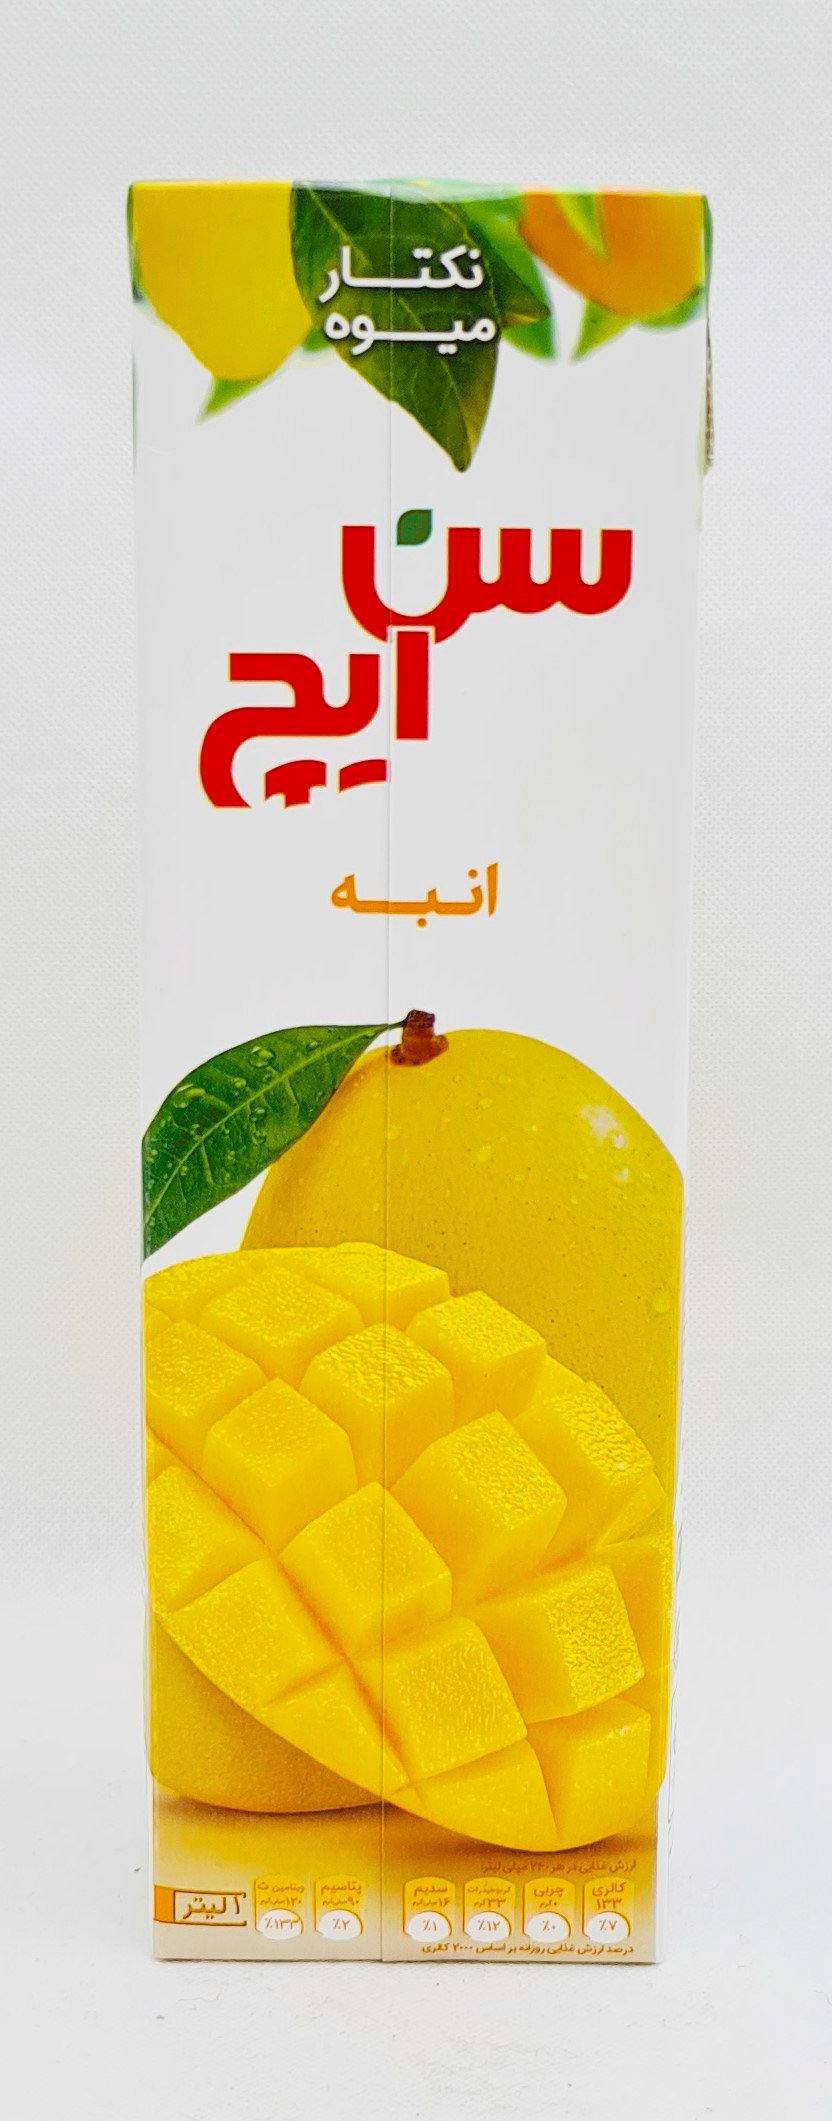 Sunich Abe Anbeh - Mango Nektar 1 Liter - Persienmarkt